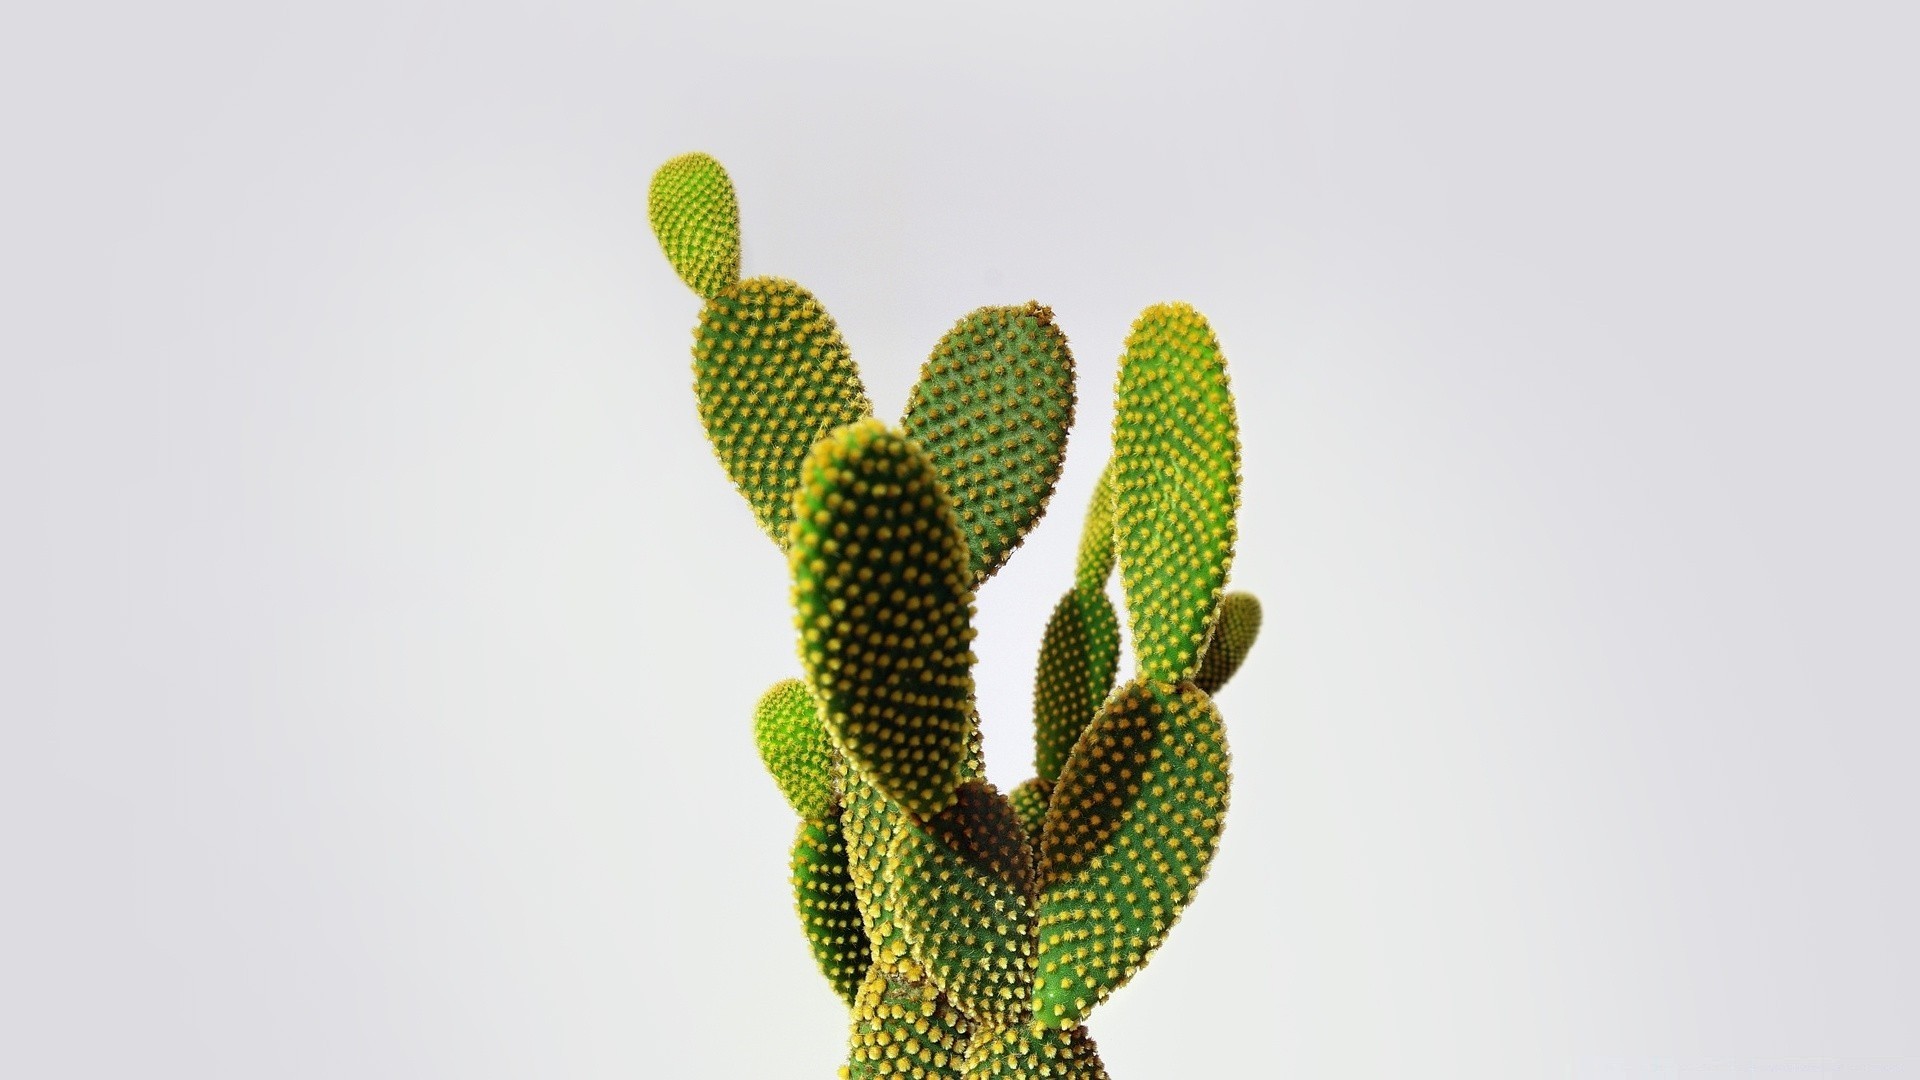 Cactus Minimalist Picture